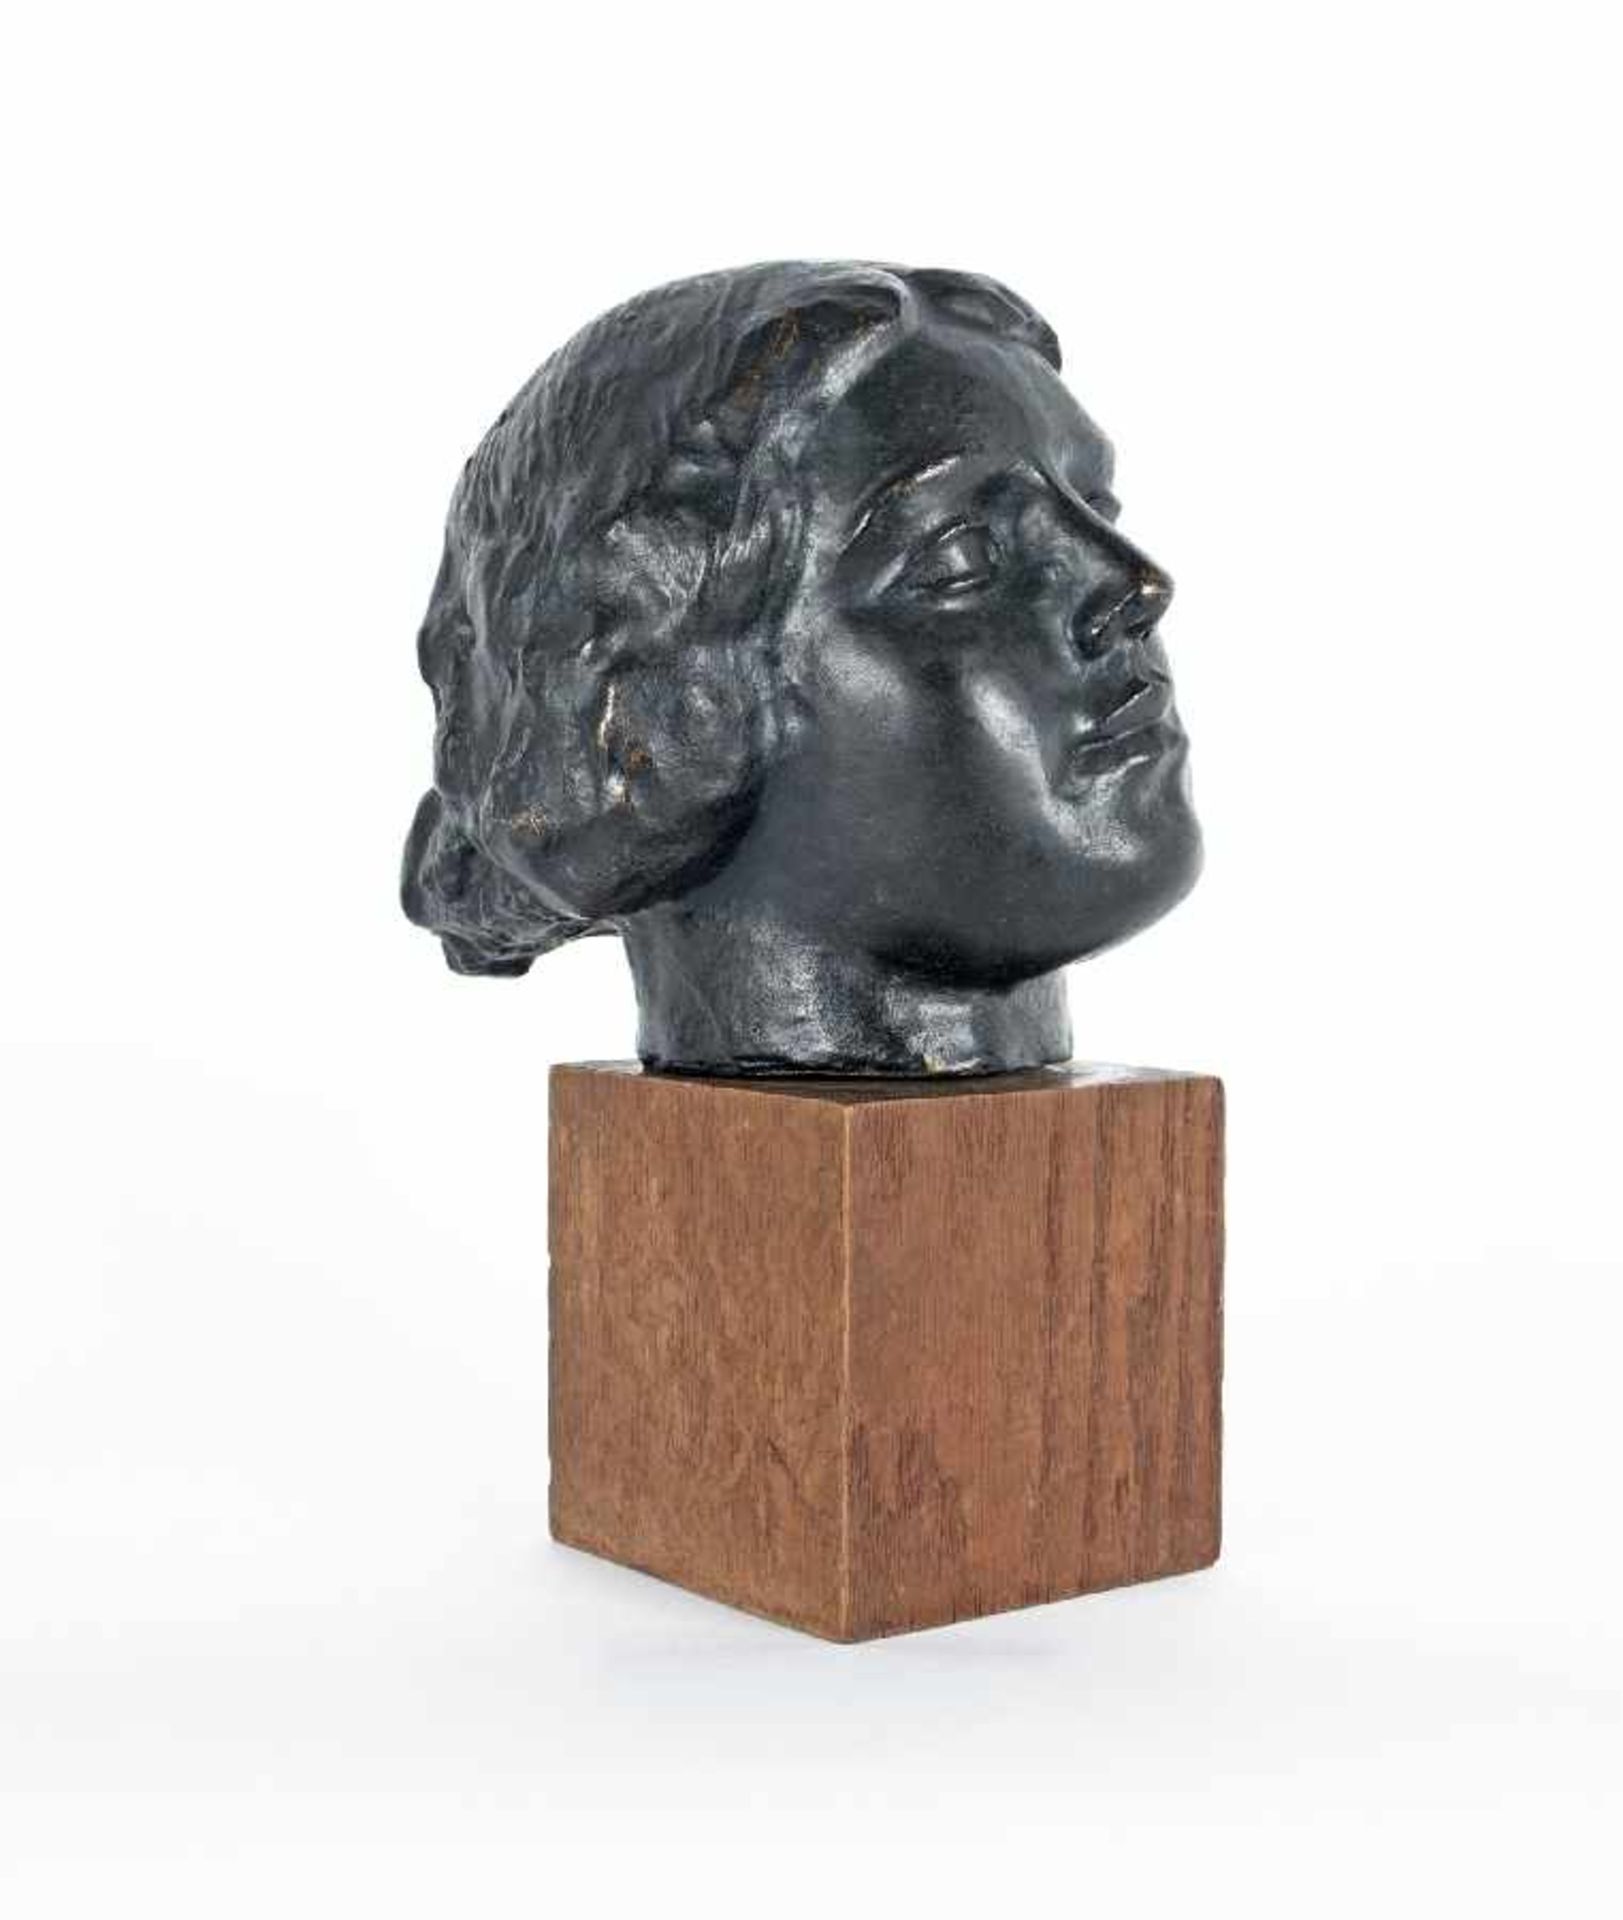 Umkreis Aristide Maillol Mädchenkopf Bronze; H 23 cm, B 20 cm, T 23 cm, Monogramm hinten links "